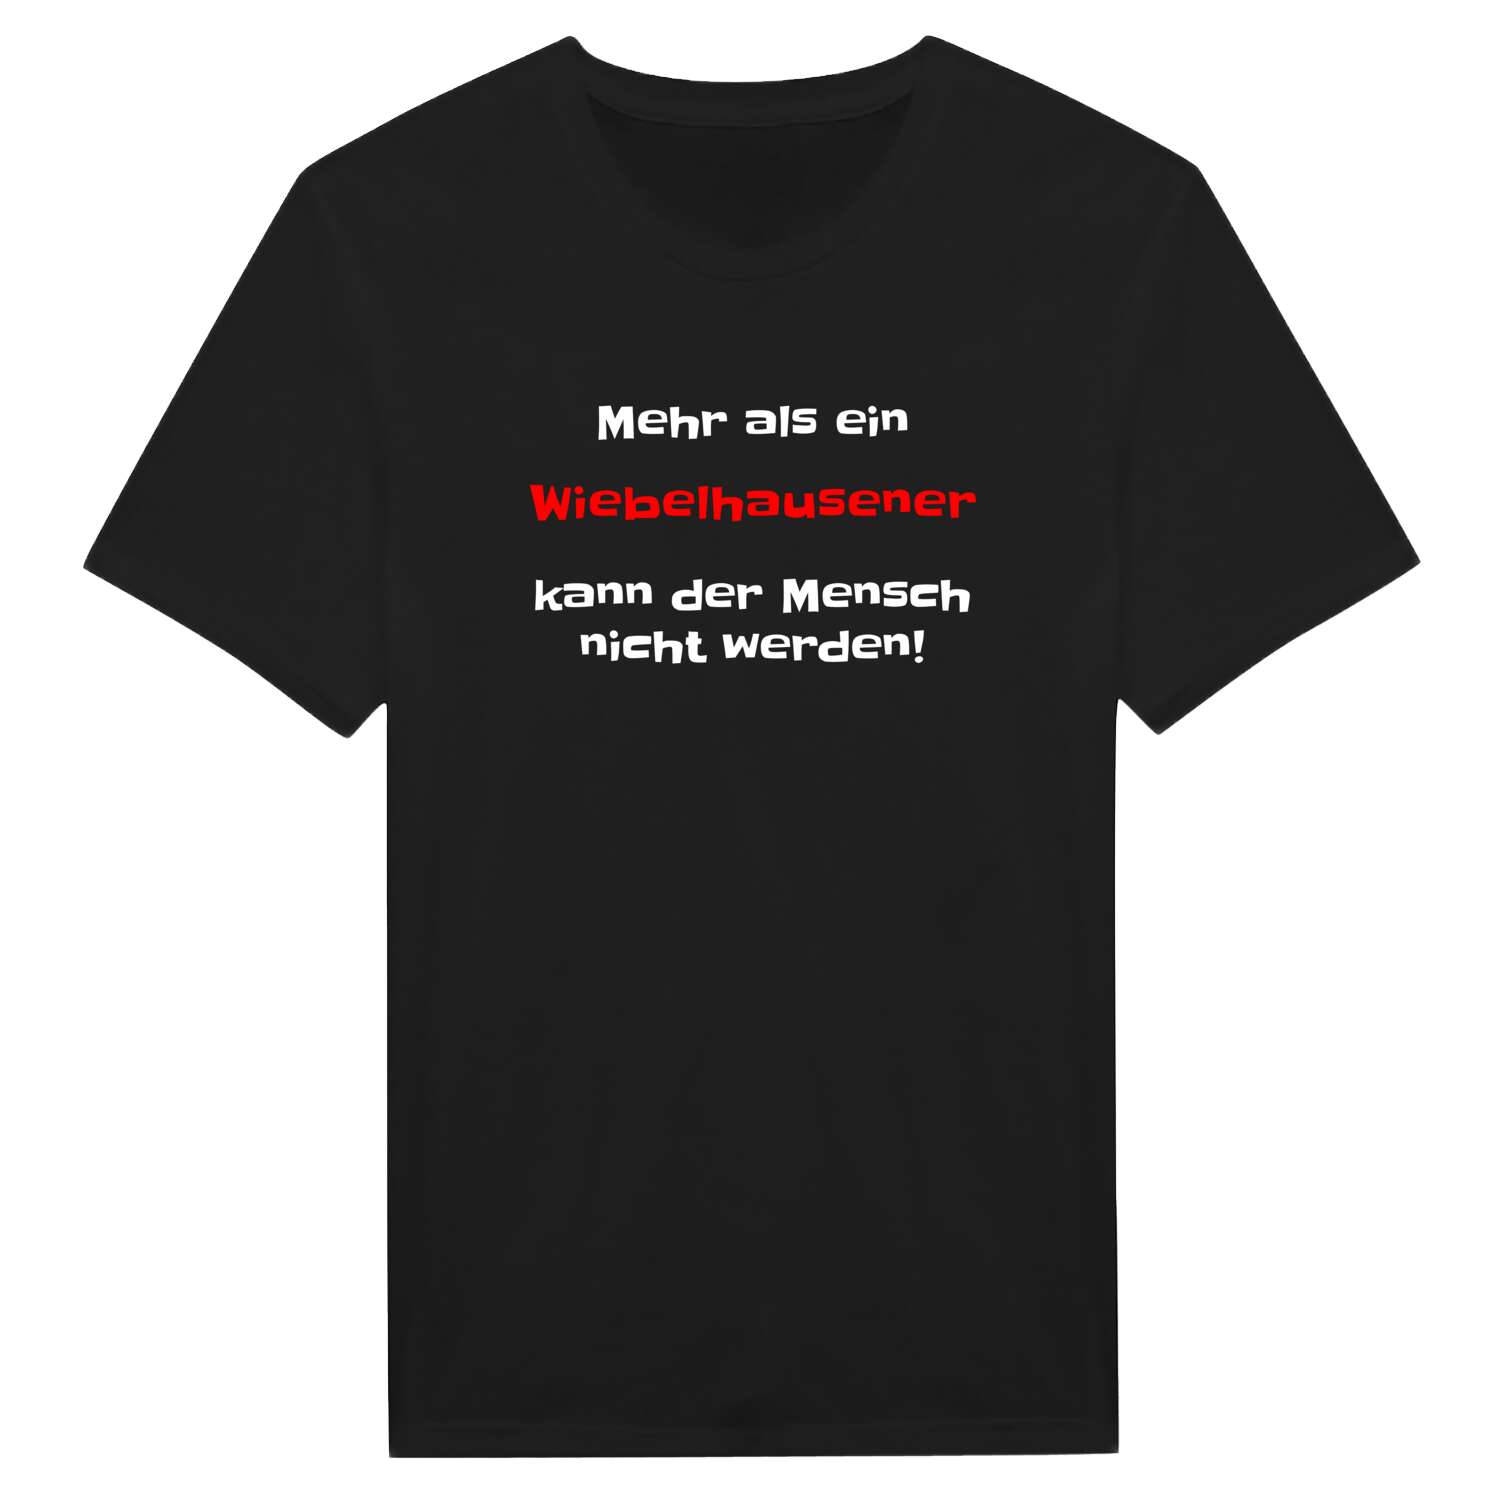 Wiebelhausen T-Shirt »Mehr als ein«